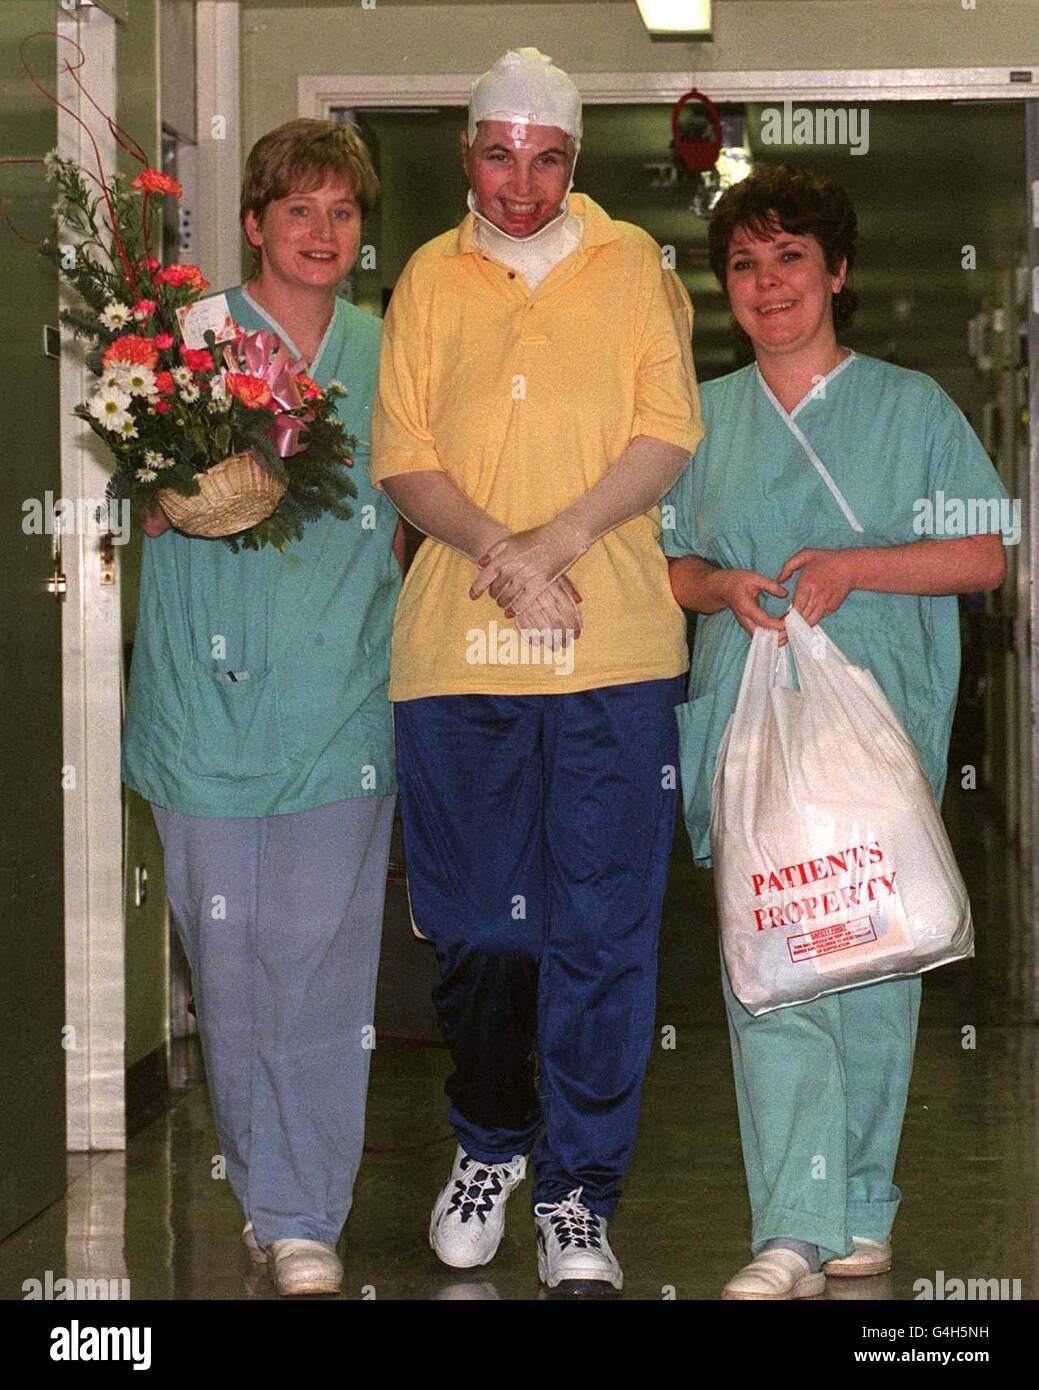 Tracey Devine (centro), ferito dall'esplosione della bomba a a Omagh, in Irlanda, lascia il Royal Victoria Hospital di Belfast con le infermiere Tina Cox (L) e Debbie Patton. Tracey, che ha perso il suo bambino nell'esplosione, è stato l'ultimo dei feriti a lasciare l'ospedale. Foto Stock